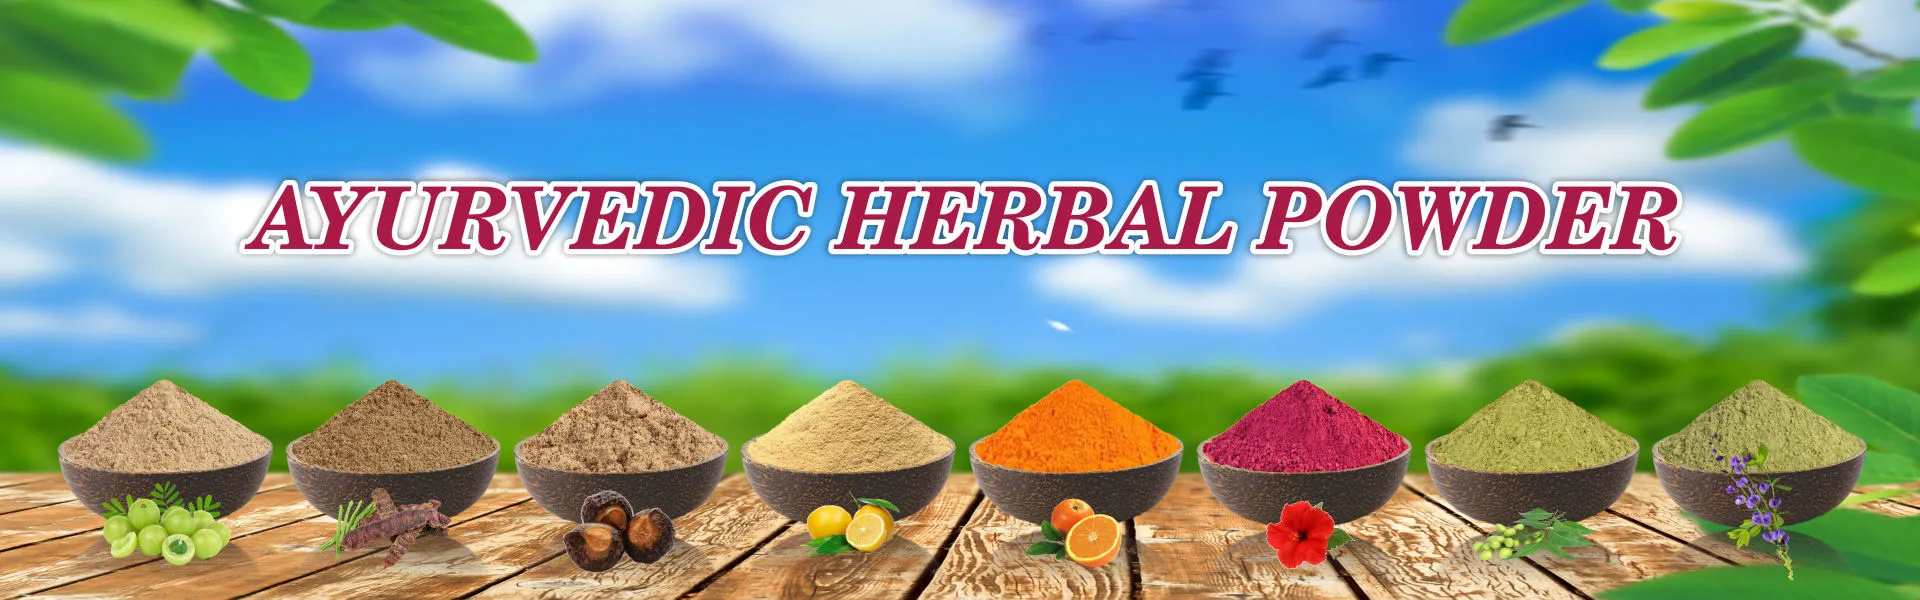 Herbal Powder - www.dkihenna.com